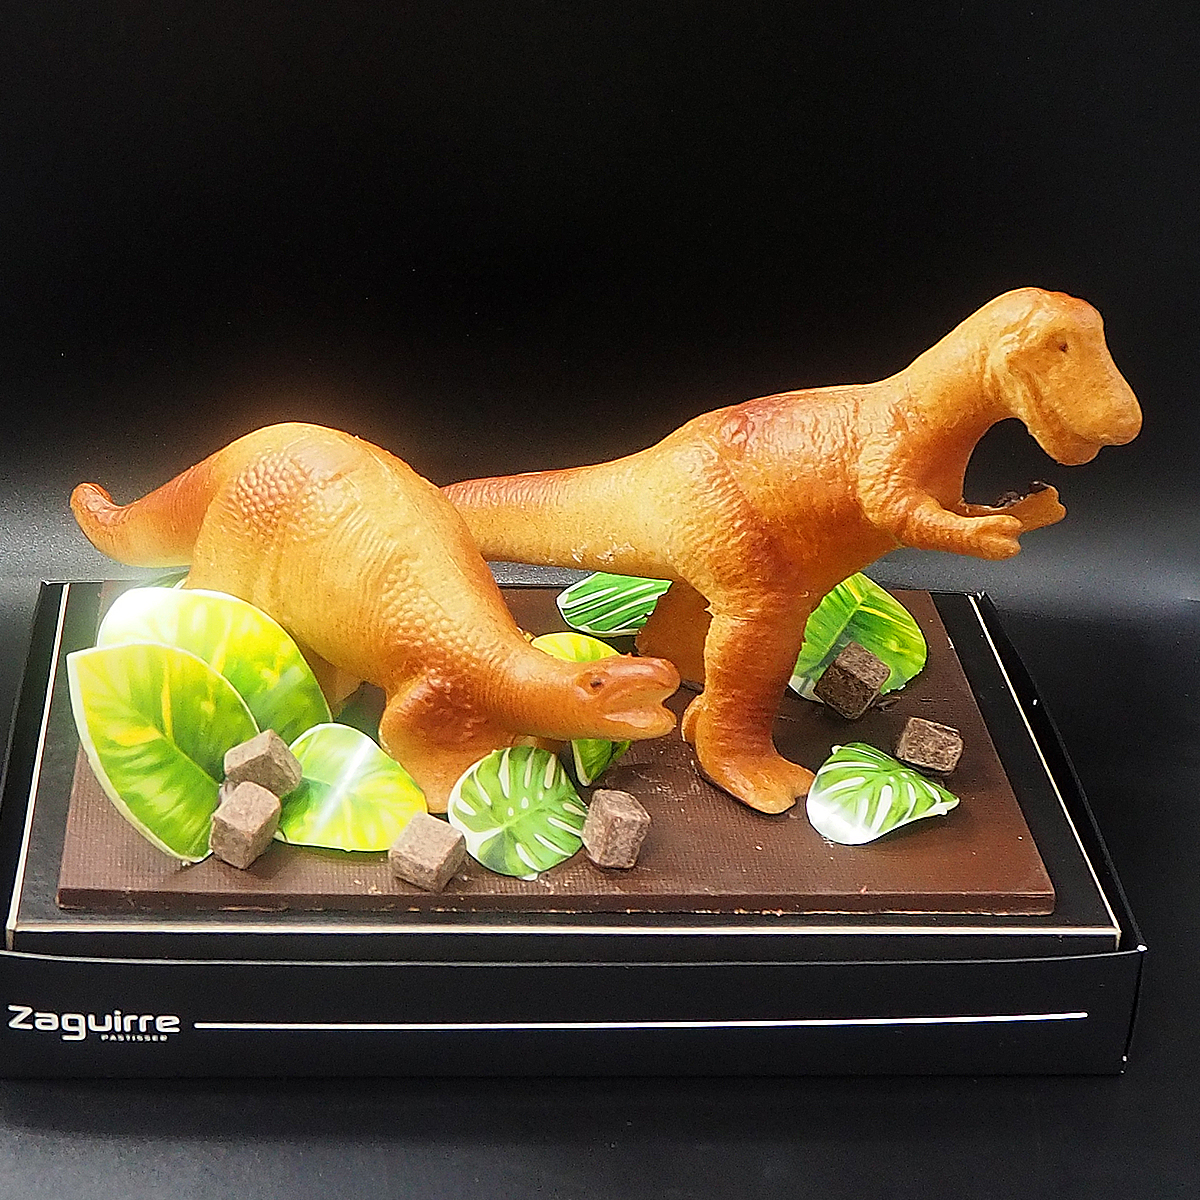 Mona de Pasqua de xocolata amb forma de dinosaure elaborada per Zaguirre Pastisser